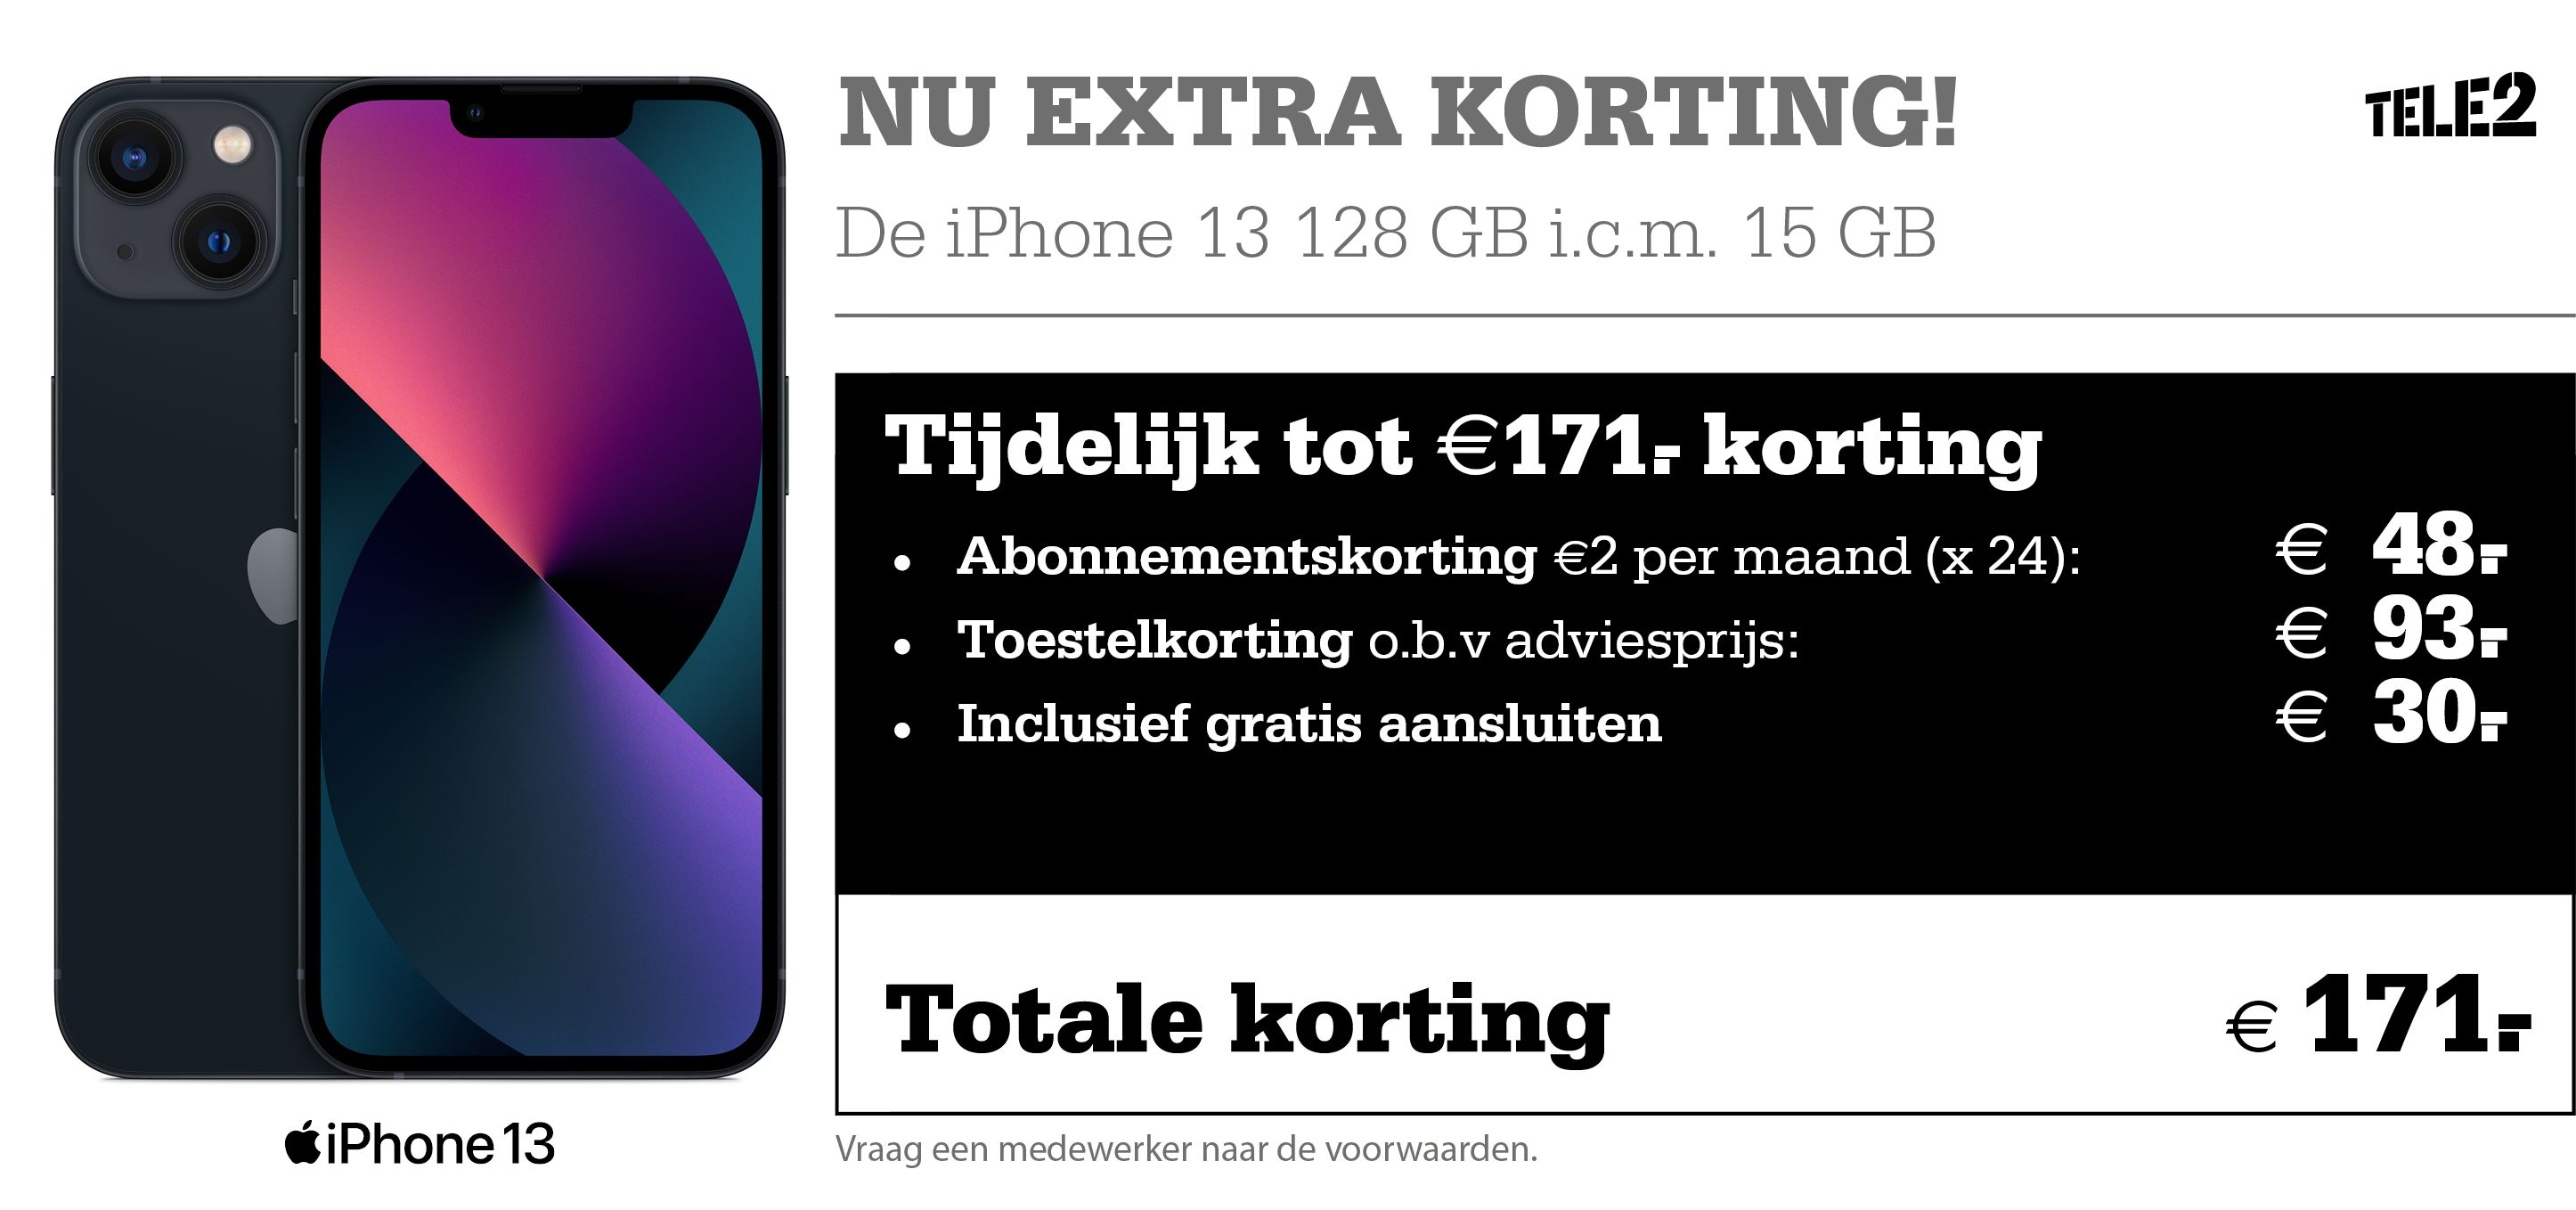 Profiteer bij Telecombinatie nu van extra voordeel op Tele2-Mobiel! Want je profiteert tijdelijk van extra scherpe prijzen, zoals €2,- korting per maand en extra data!